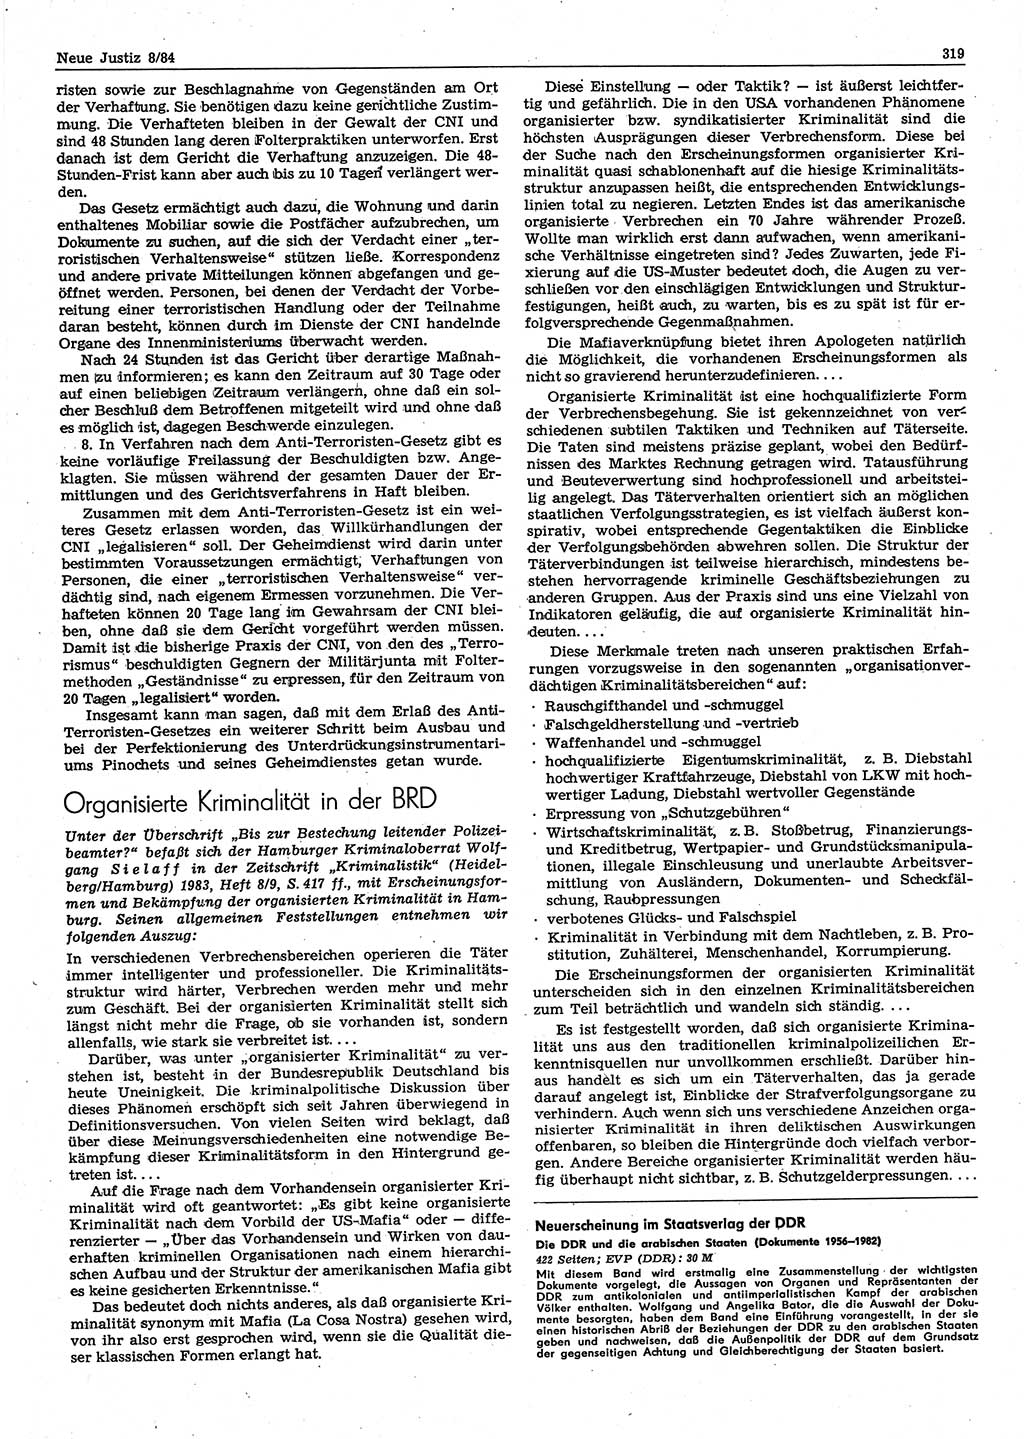 Neue Justiz (NJ), Zeitschrift für sozialistisches Recht und Gesetzlichkeit [Deutsche Demokratische Republik (DDR)], 38. Jahrgang 1984, Seite 319 (NJ DDR 1984, S. 319)